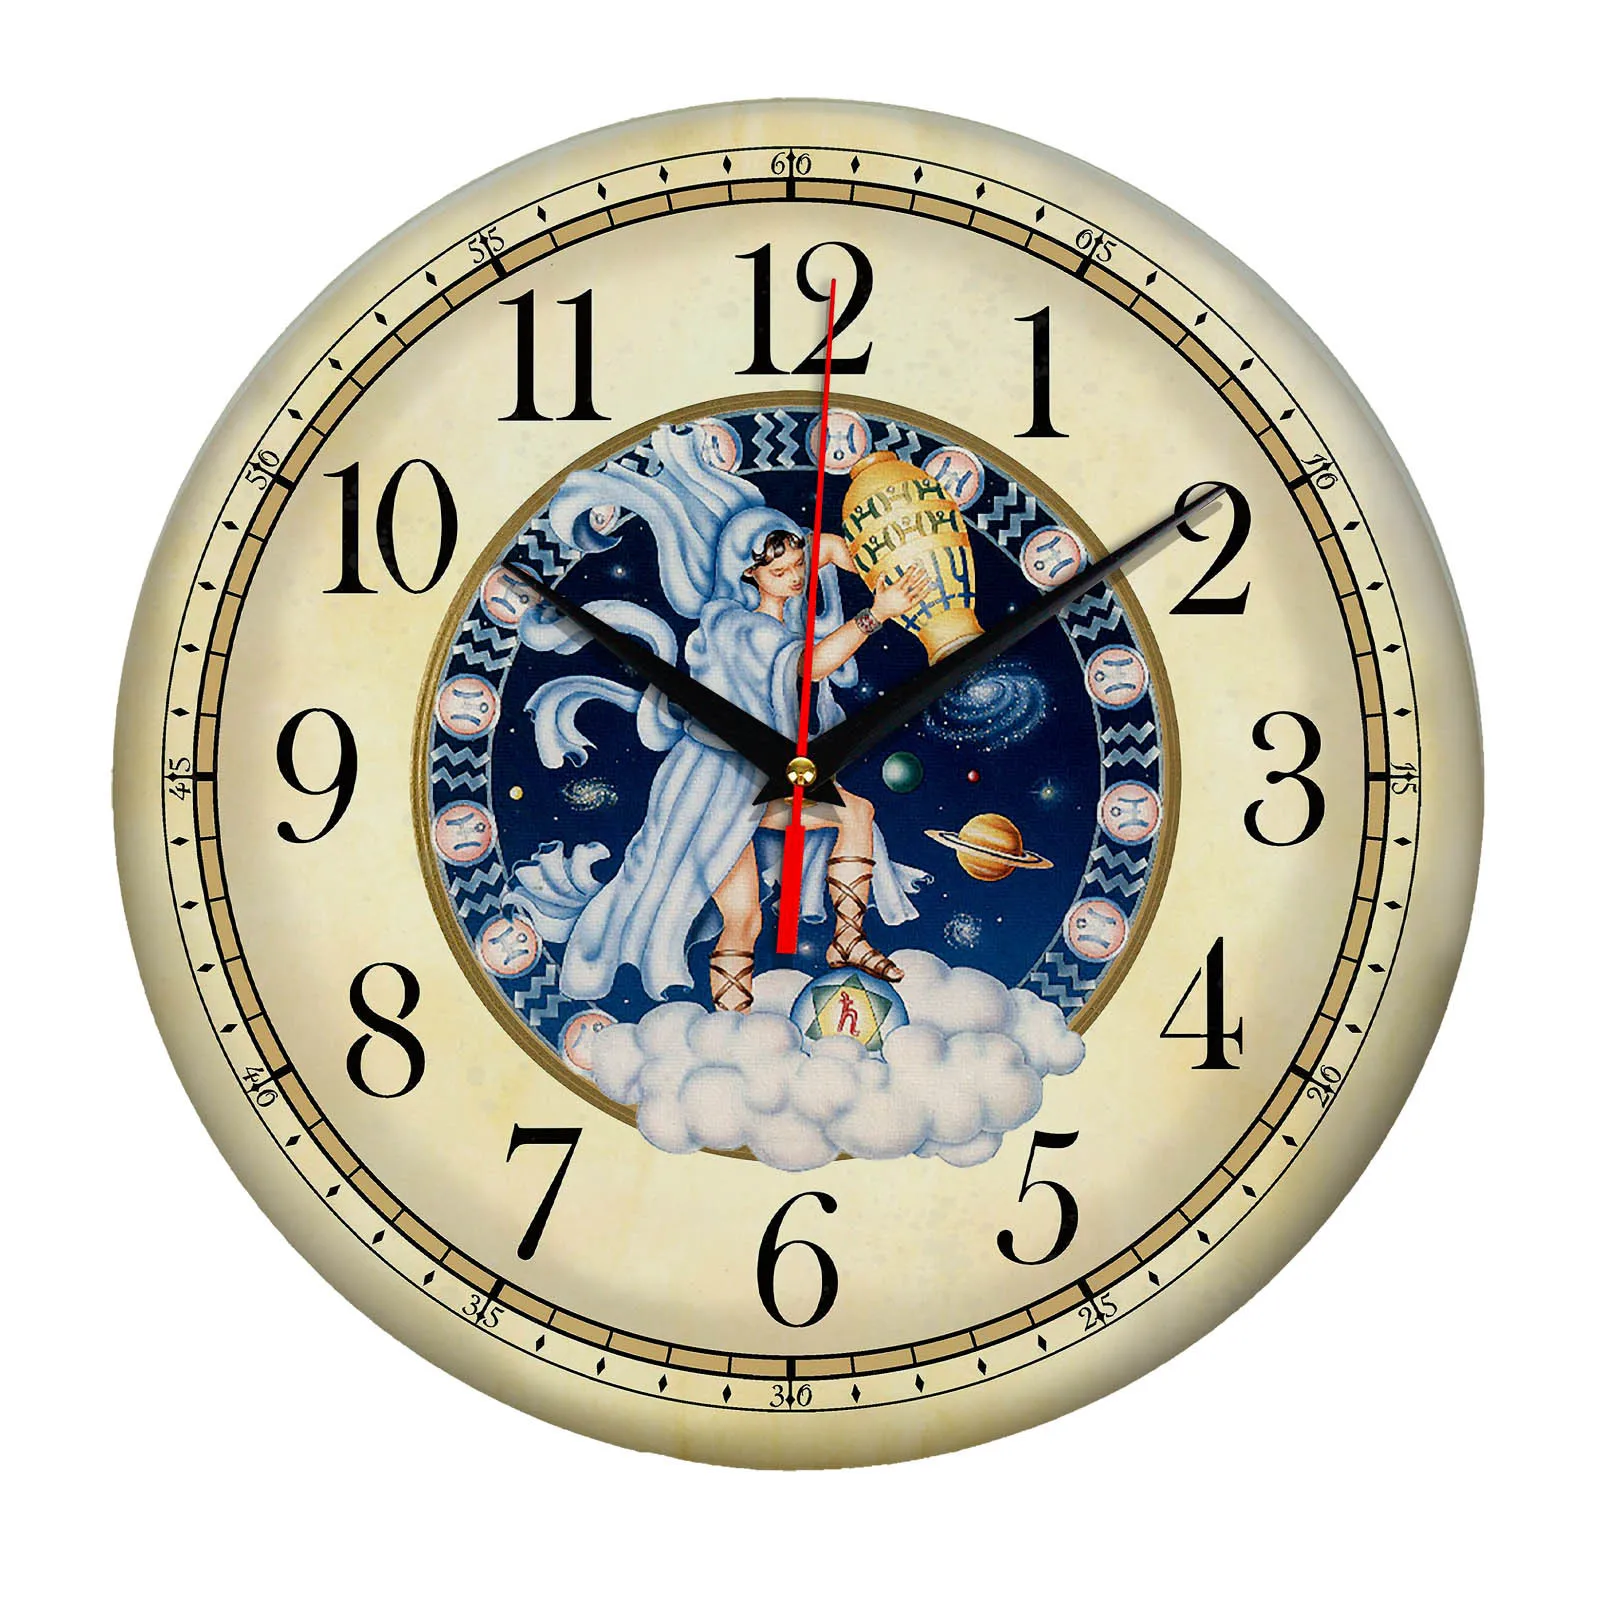 Часы зодиак. Часы Zodiac. Часы сувенирные. Часы настенные Зодиак. Часы настенные Водолей.